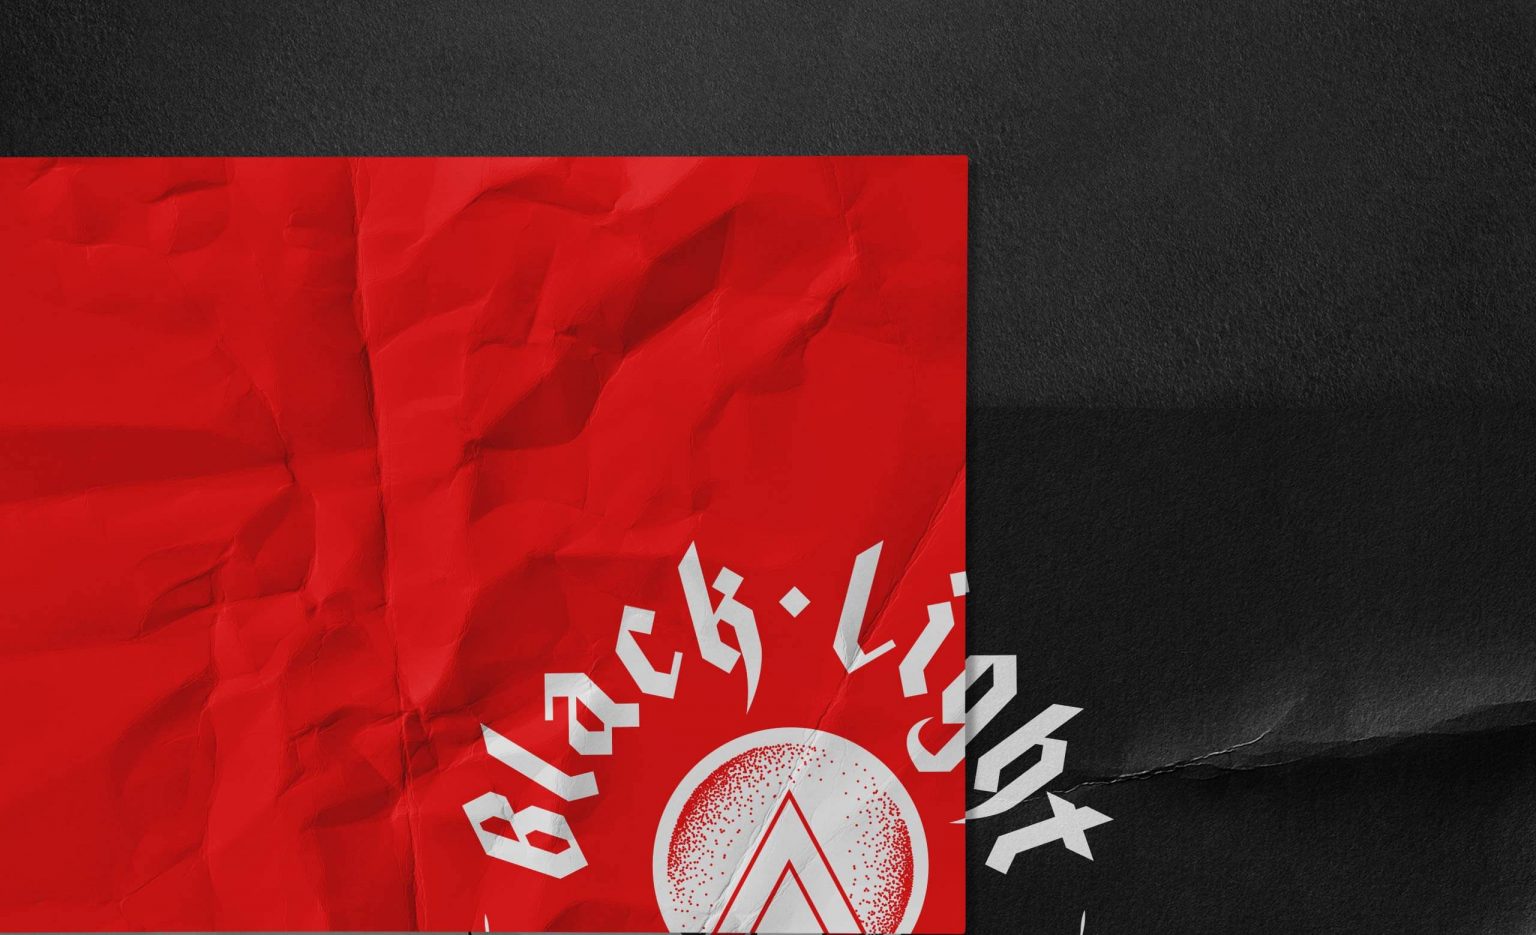 Black light studios-Liff-branding